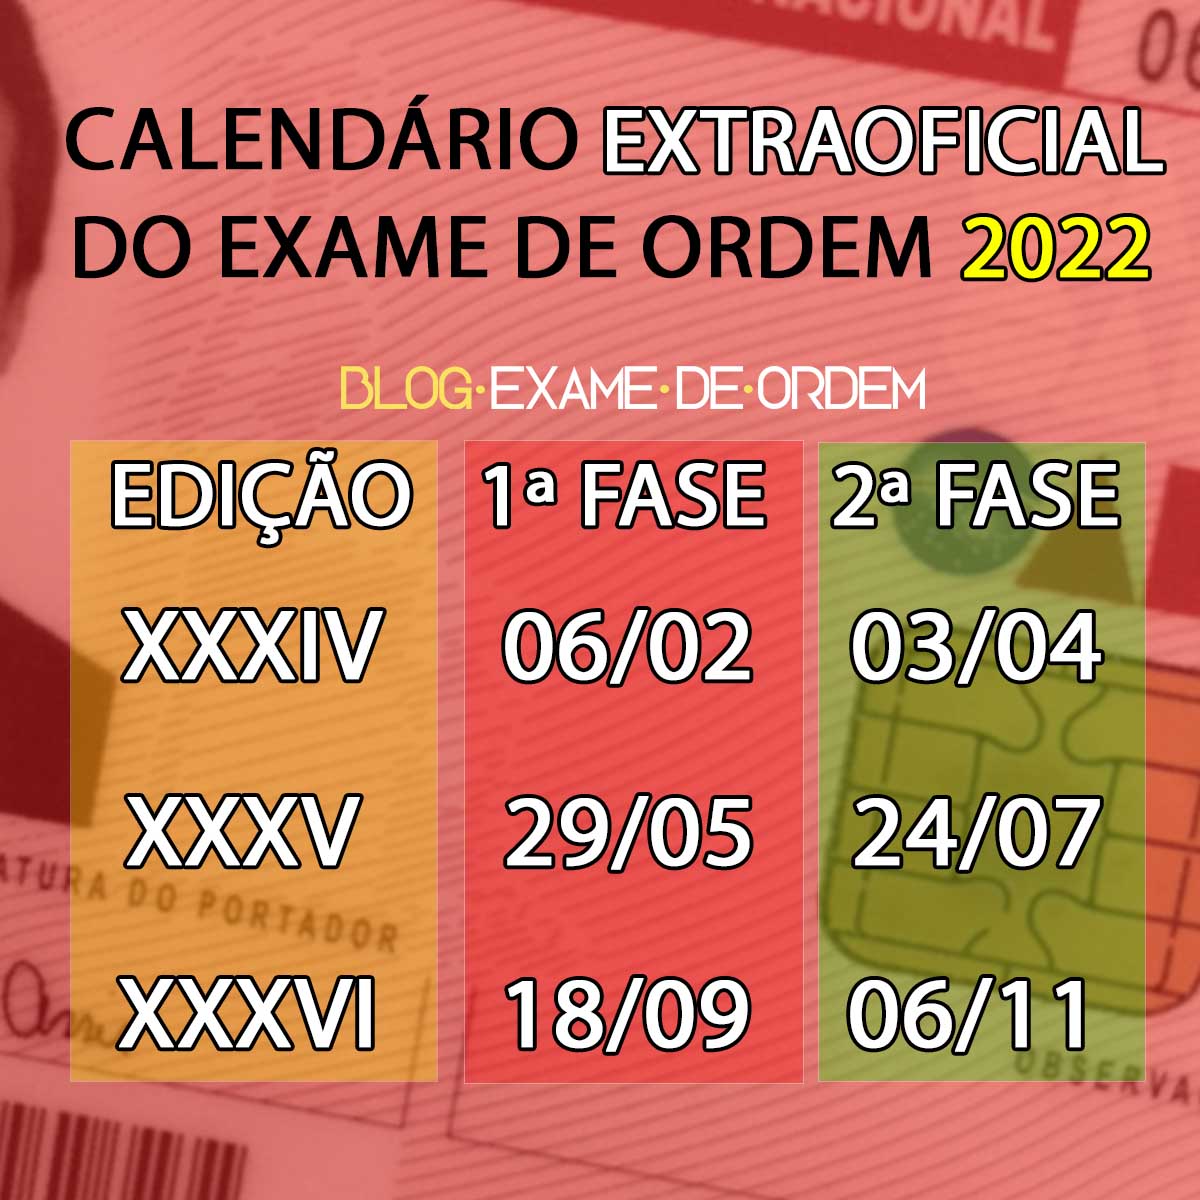 Calendário extraoficial! Projeção das datas do Exame de Ordem 2022